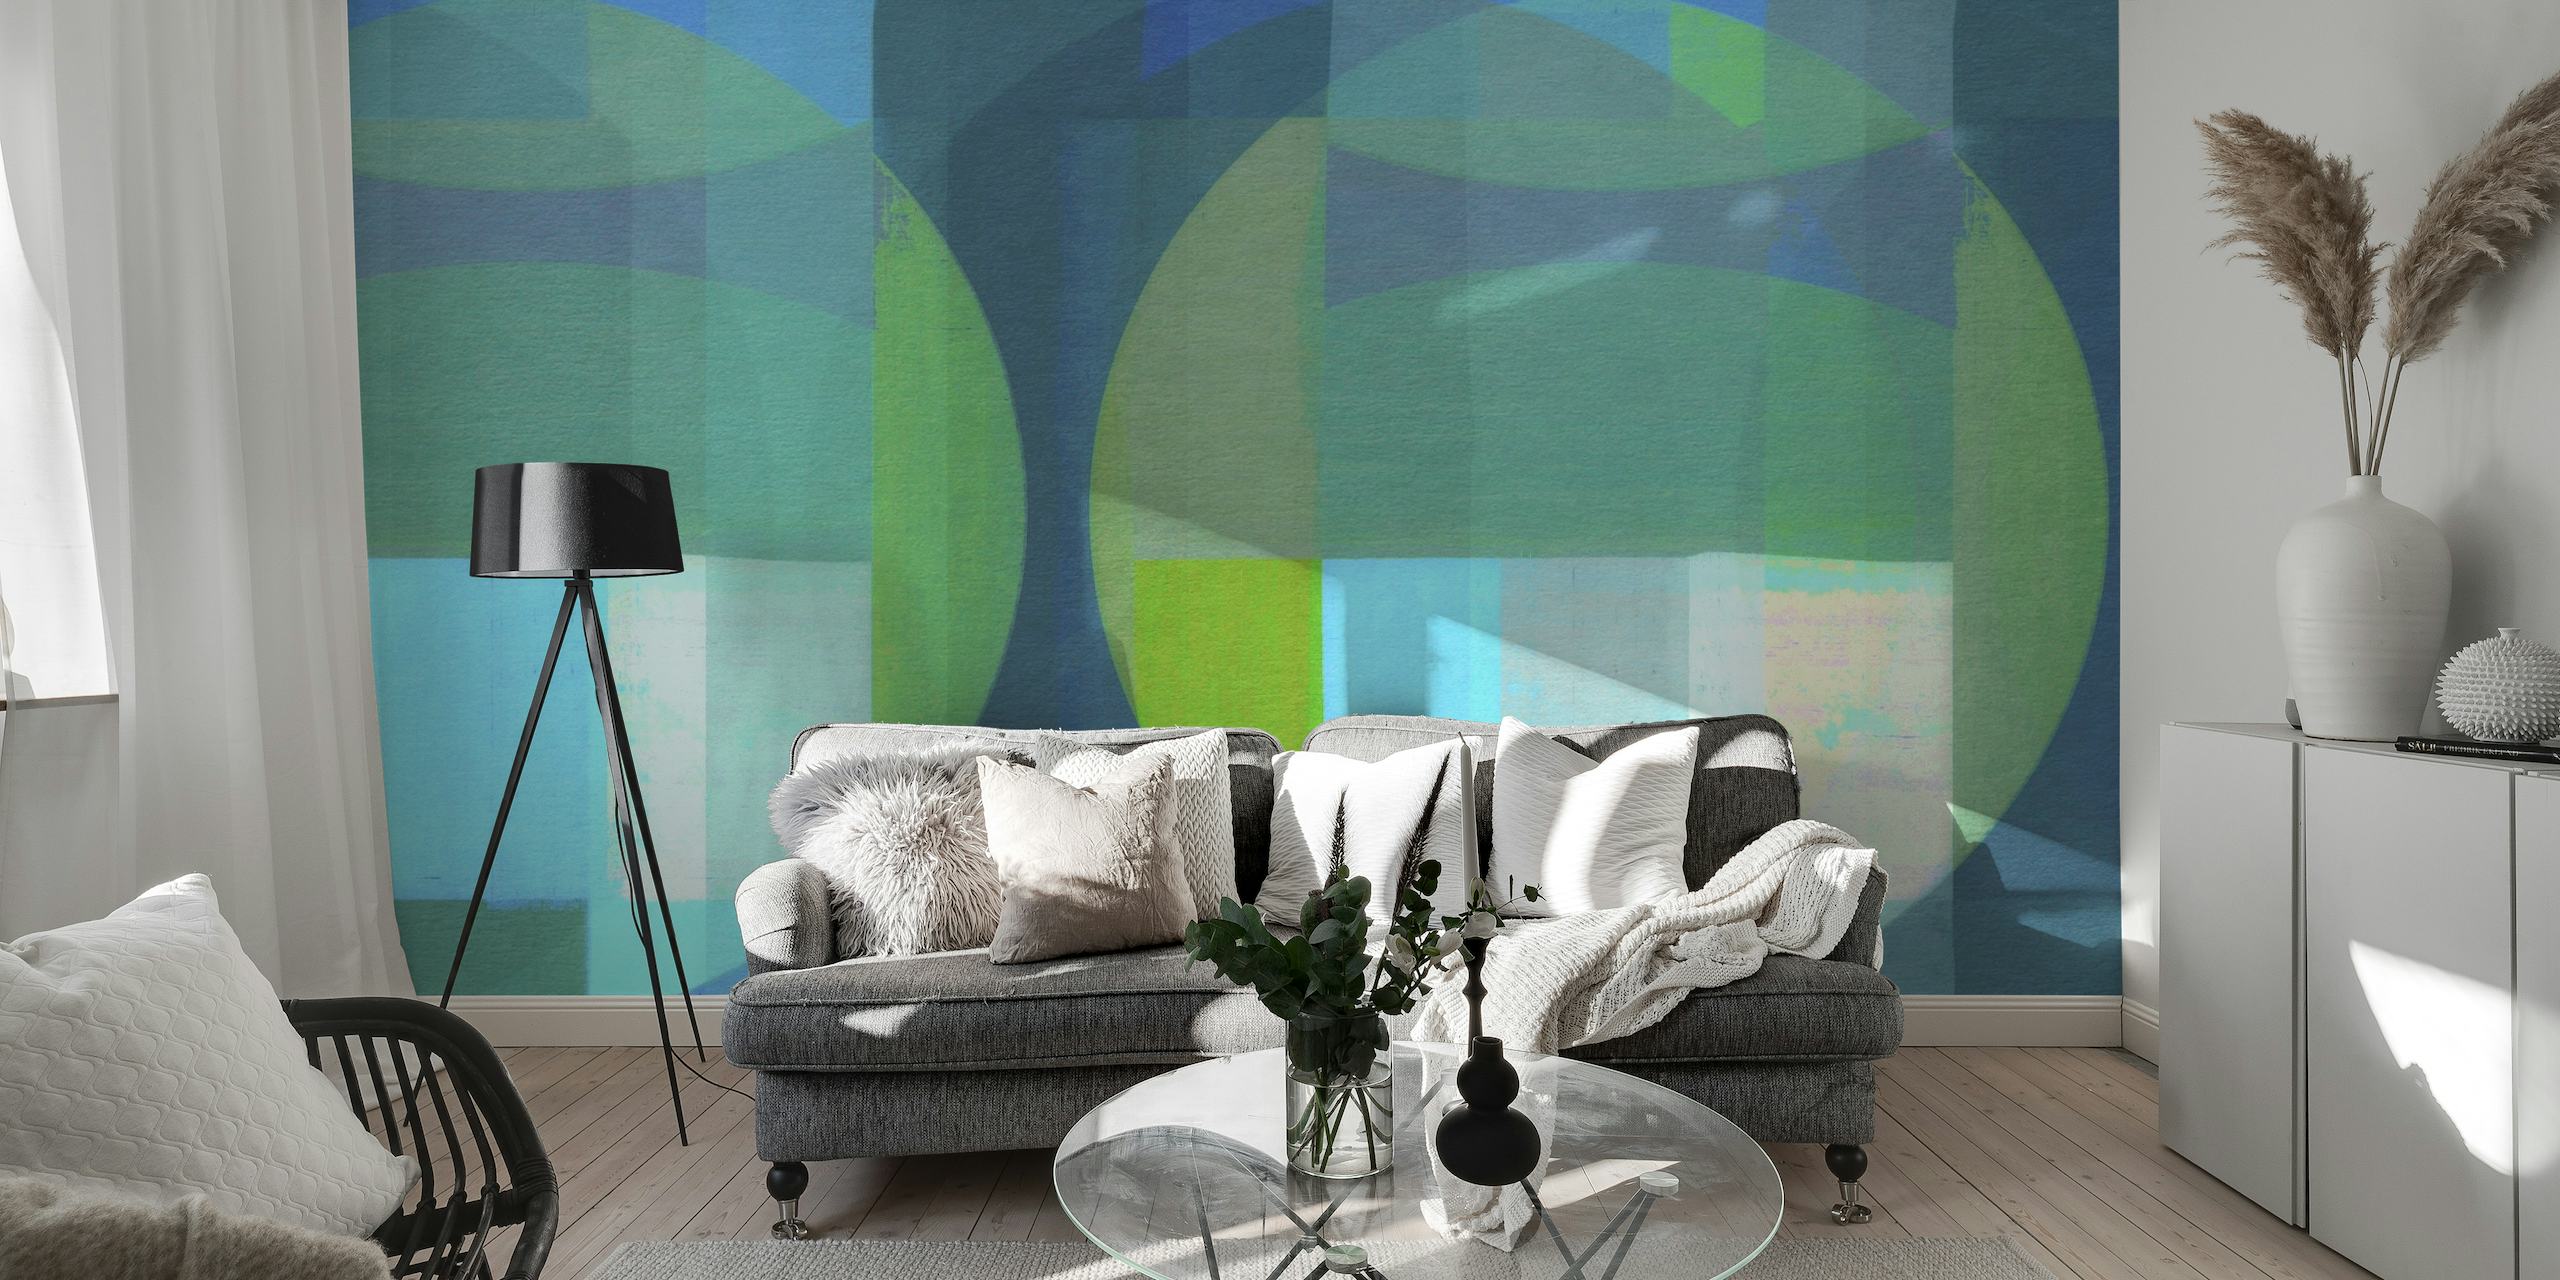 Blauwgroen en groen abstracte muurschildering in moderne stijl uit het midden van de eeuw